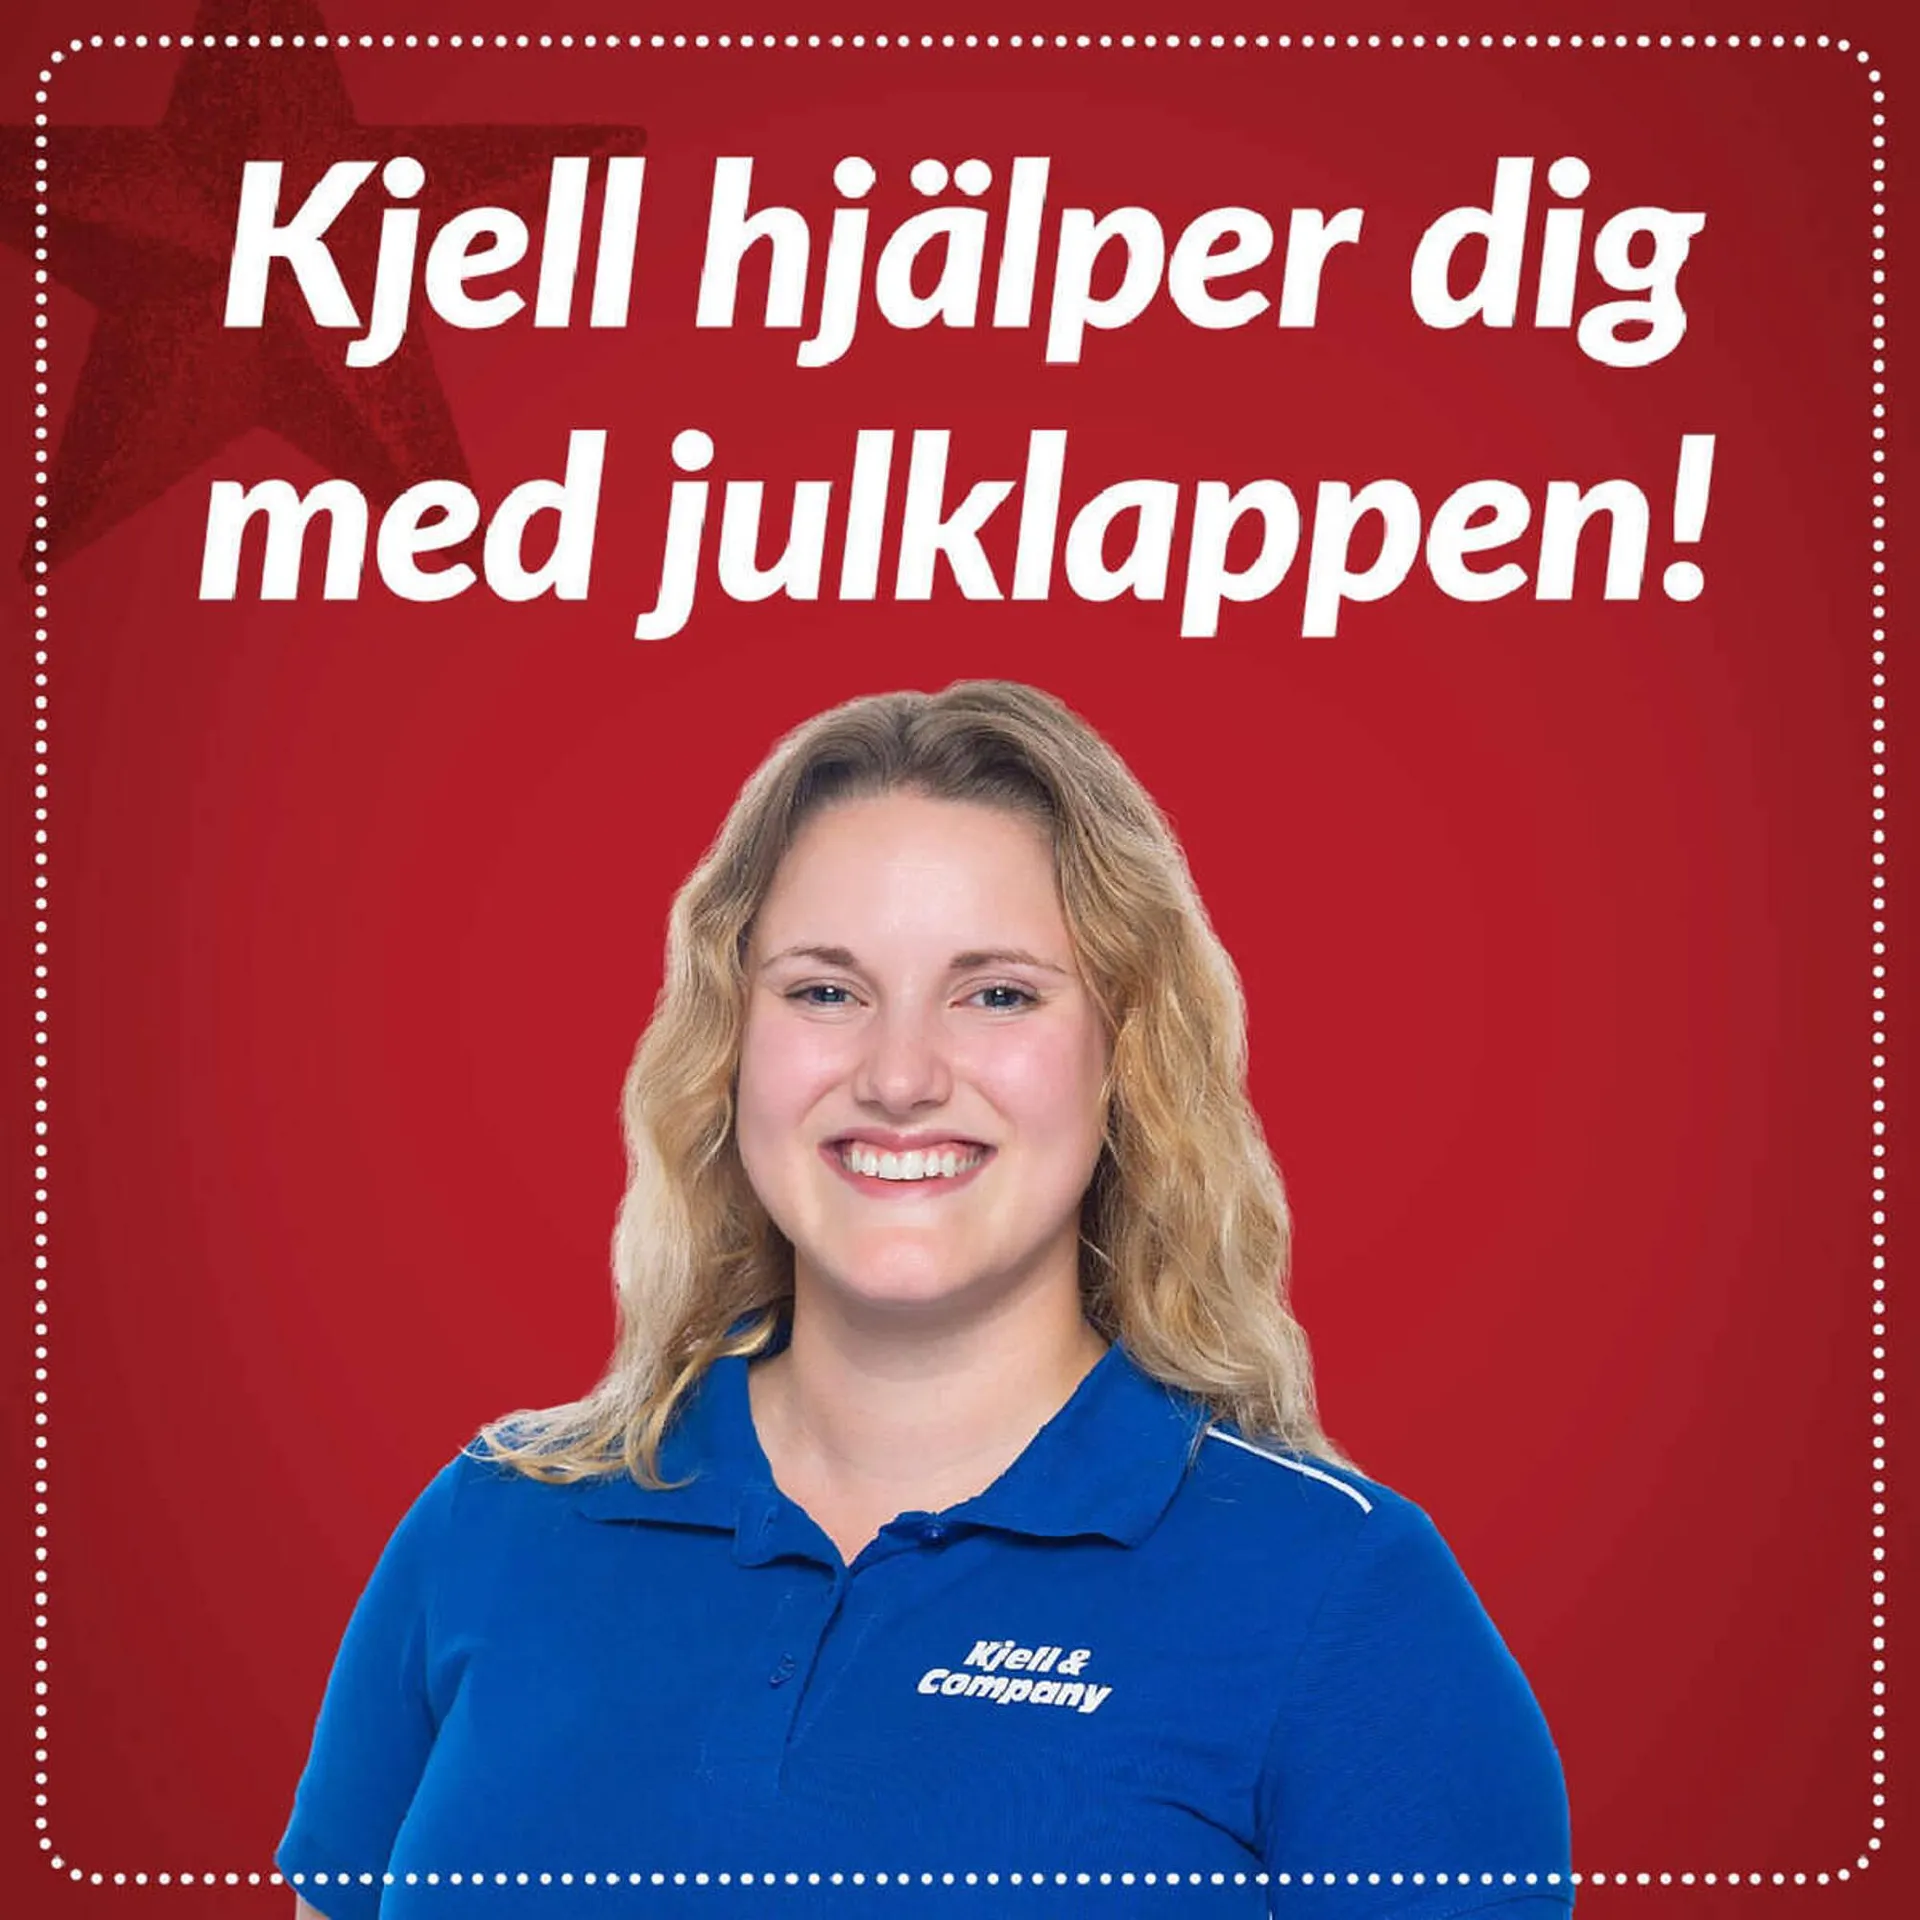 Kjell & Company reklamblad